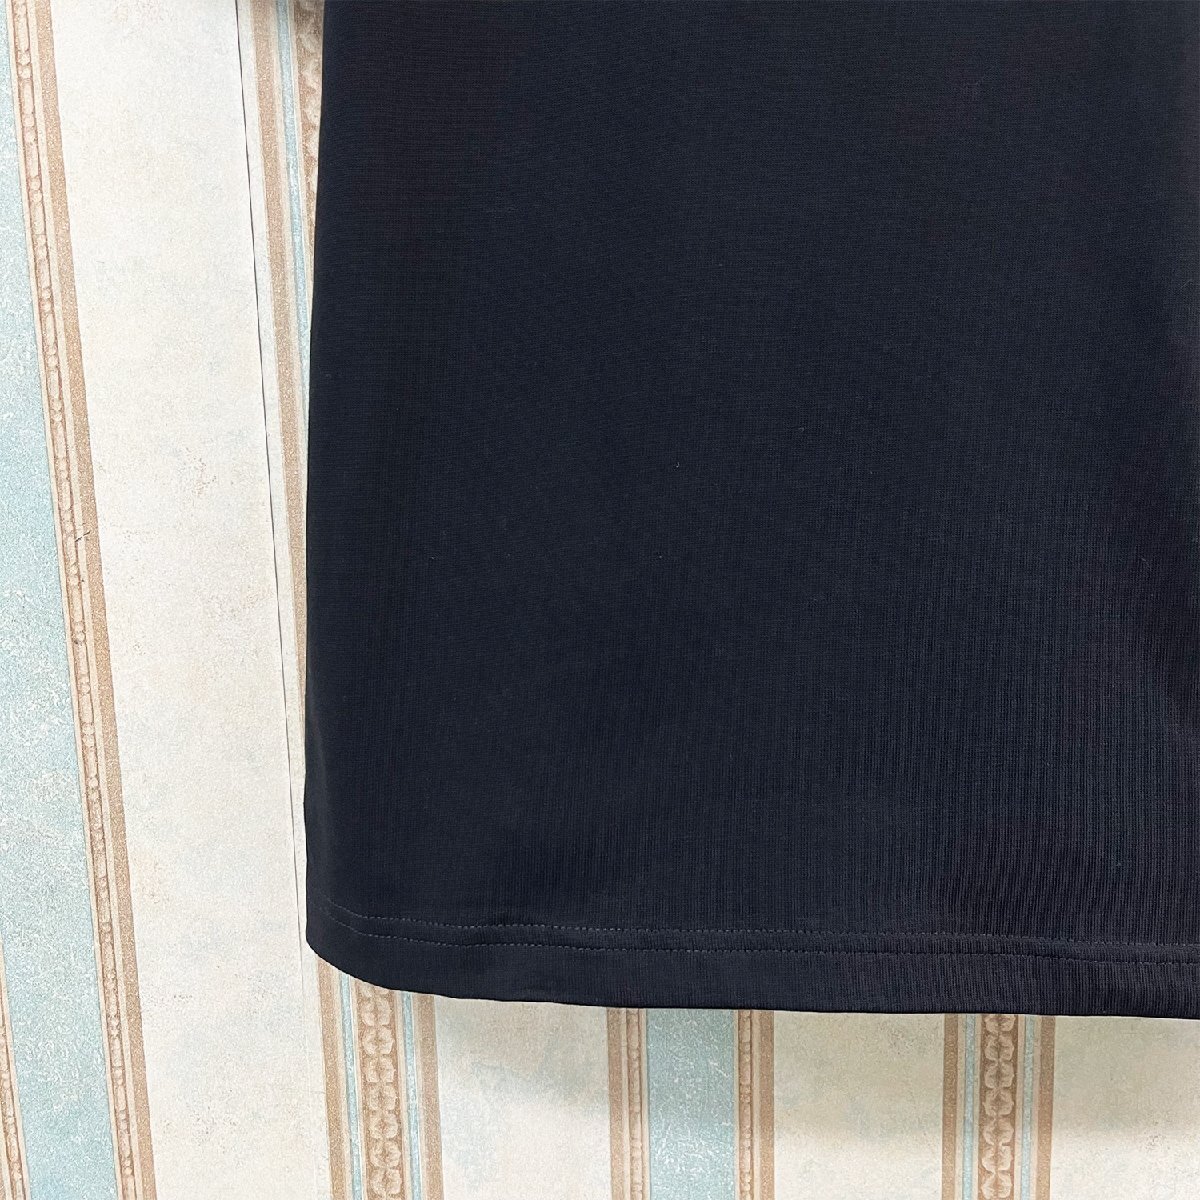 個性 定価2万 FRANKLIN MUSK・アメリカ・ニューヨーク発 半袖Tシャツ 薄手 通気 イラスト カットソー レジャー ユニセックス 夏 サイズ3_画像5